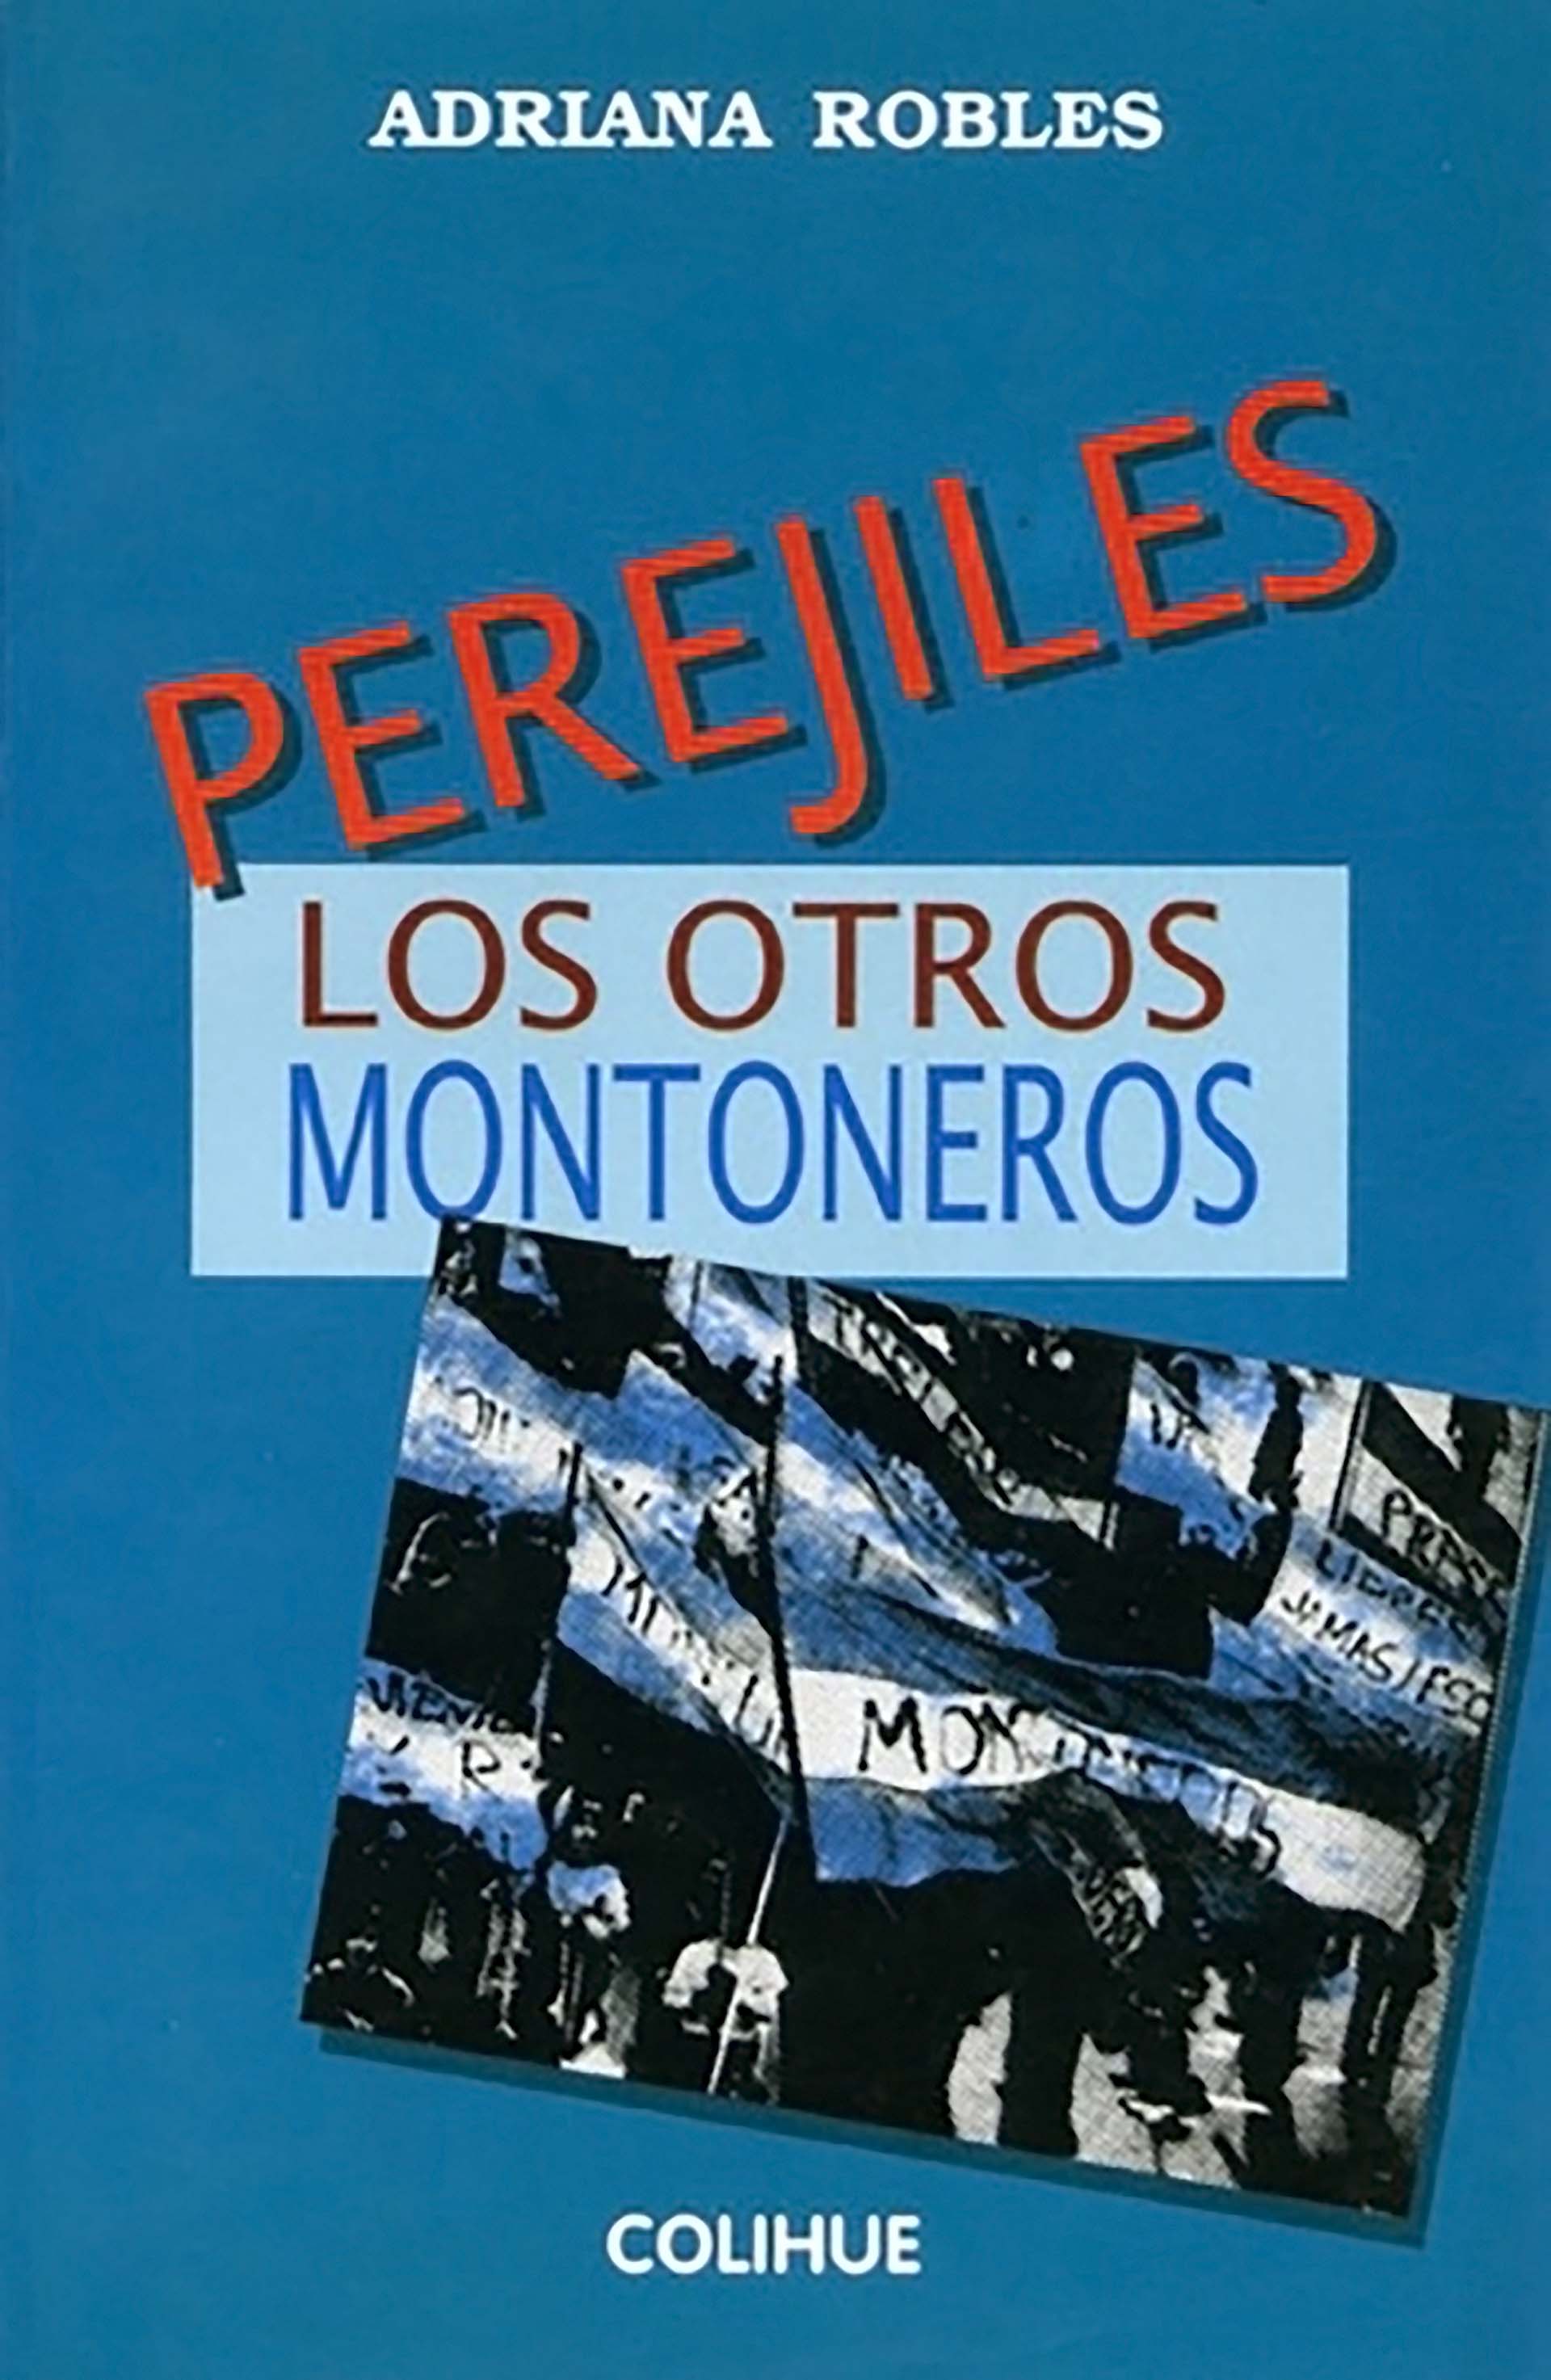 Perejiles, el libro de Adriana Robles donde cuenta cÃ³mo separaron a un joven de la UES porque fumaba marihuana